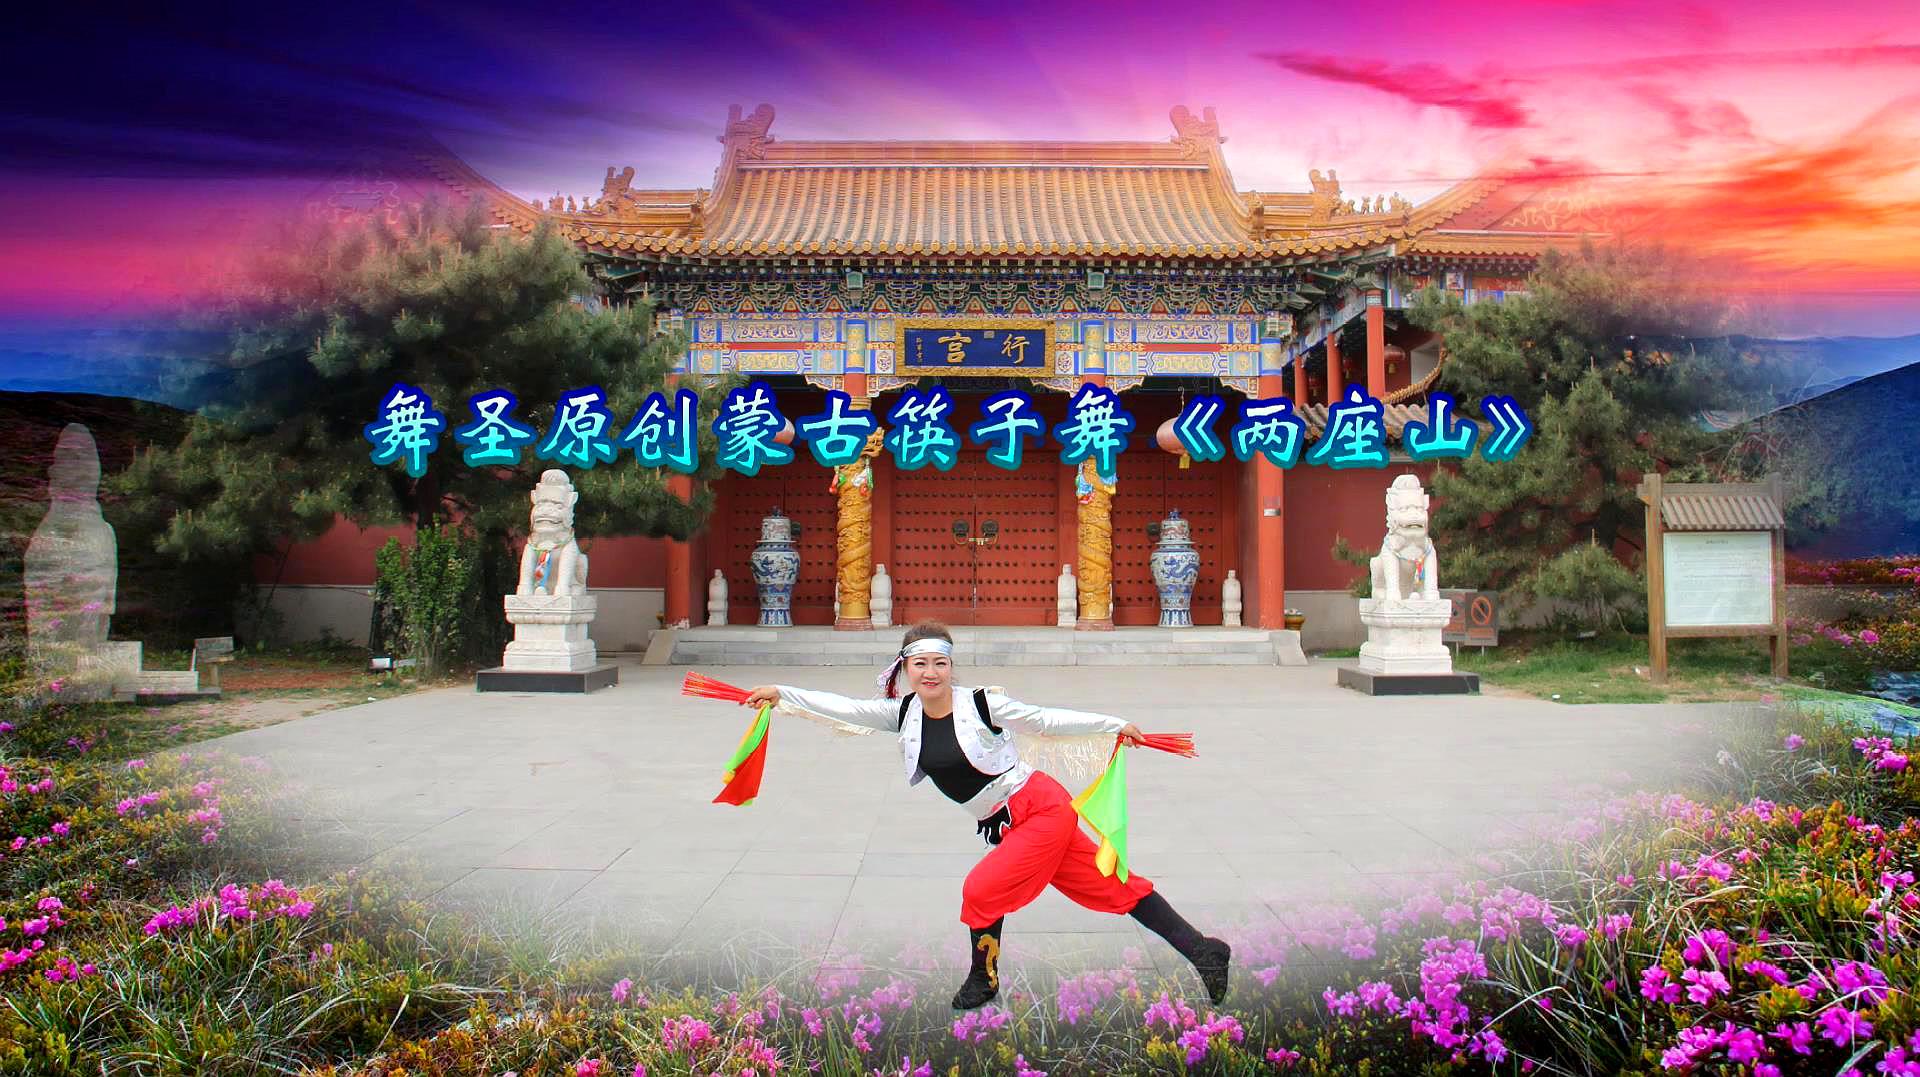 舞圣原创蒙古筷子舞《两座山》正、背面演示及动作讲解